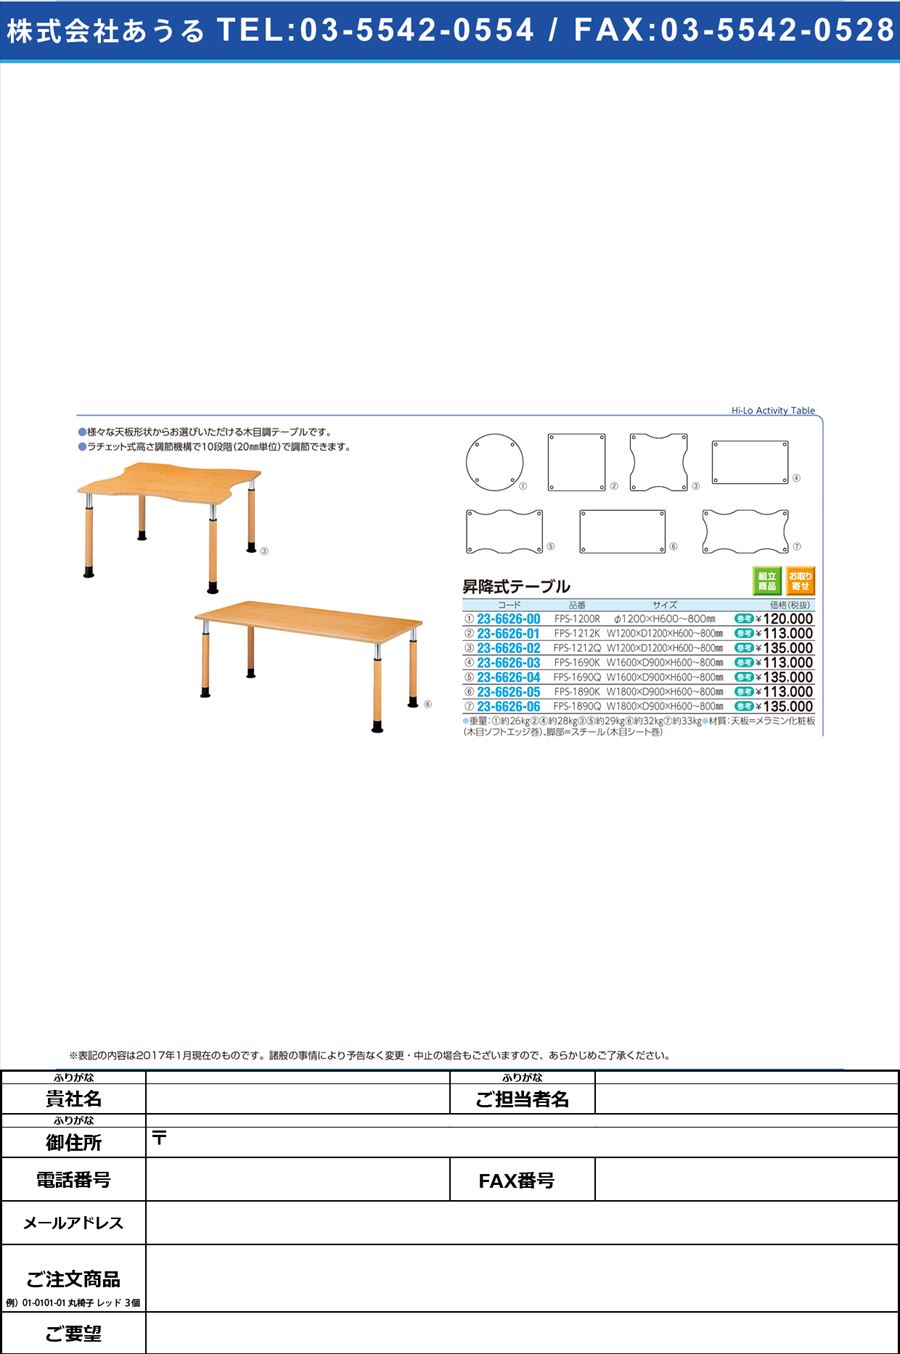 昇降式テーブル ｼｮｳｺｳｼｷﾃｰﾌﾞﾙ FPS1212Q(W120XD120CM(23-6626-02)【1台単位】【2017年カタログ商品】